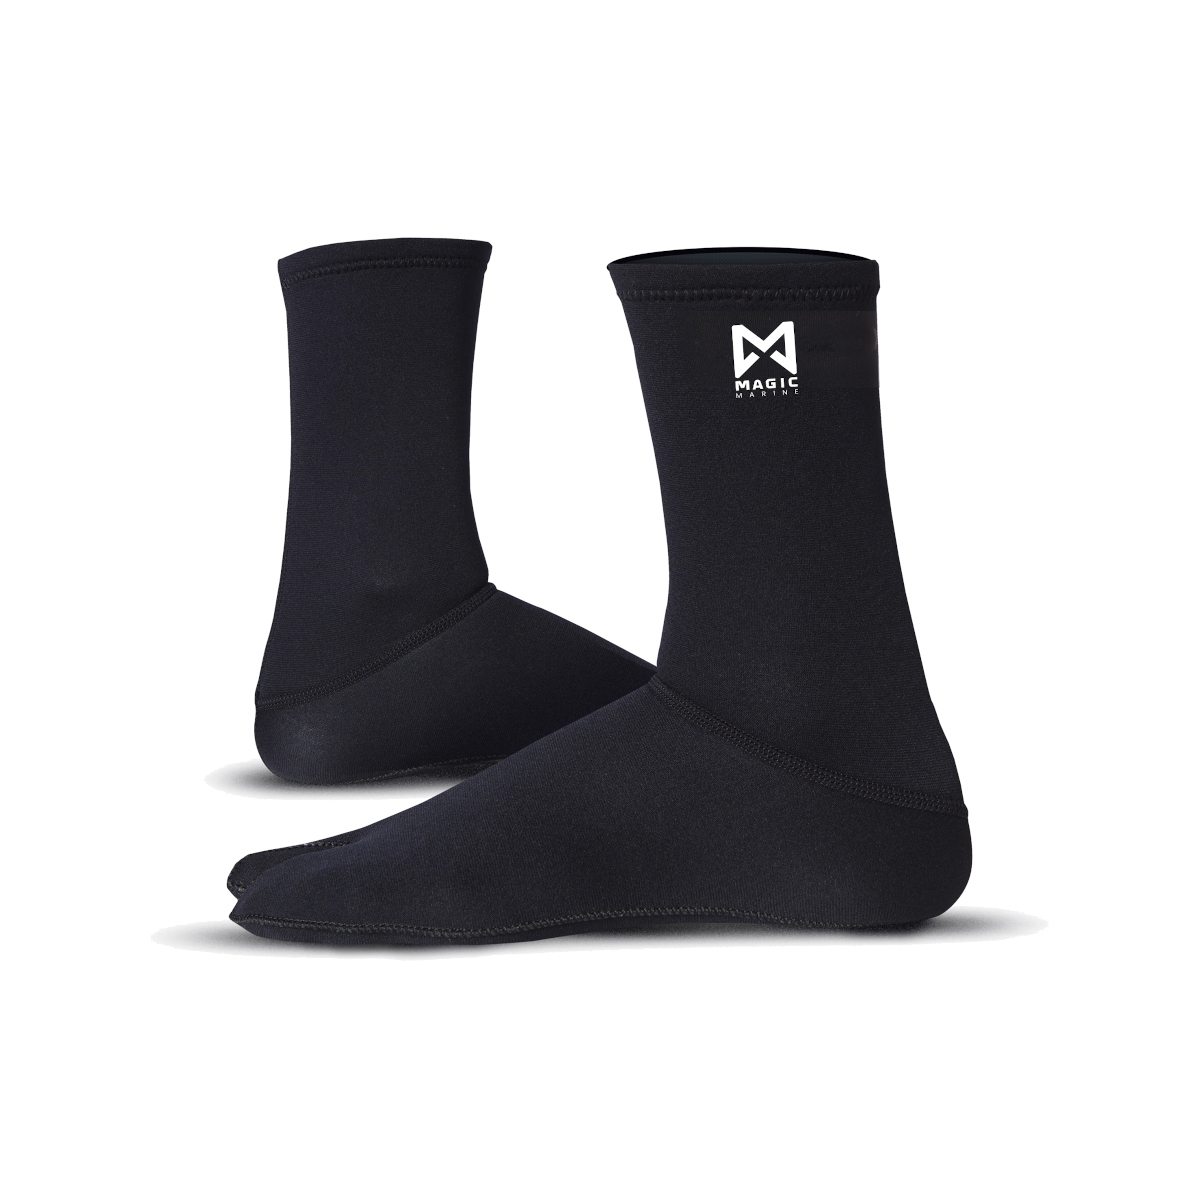 Magic Marine chaussettes néoprène/métalite - noir, taille XS